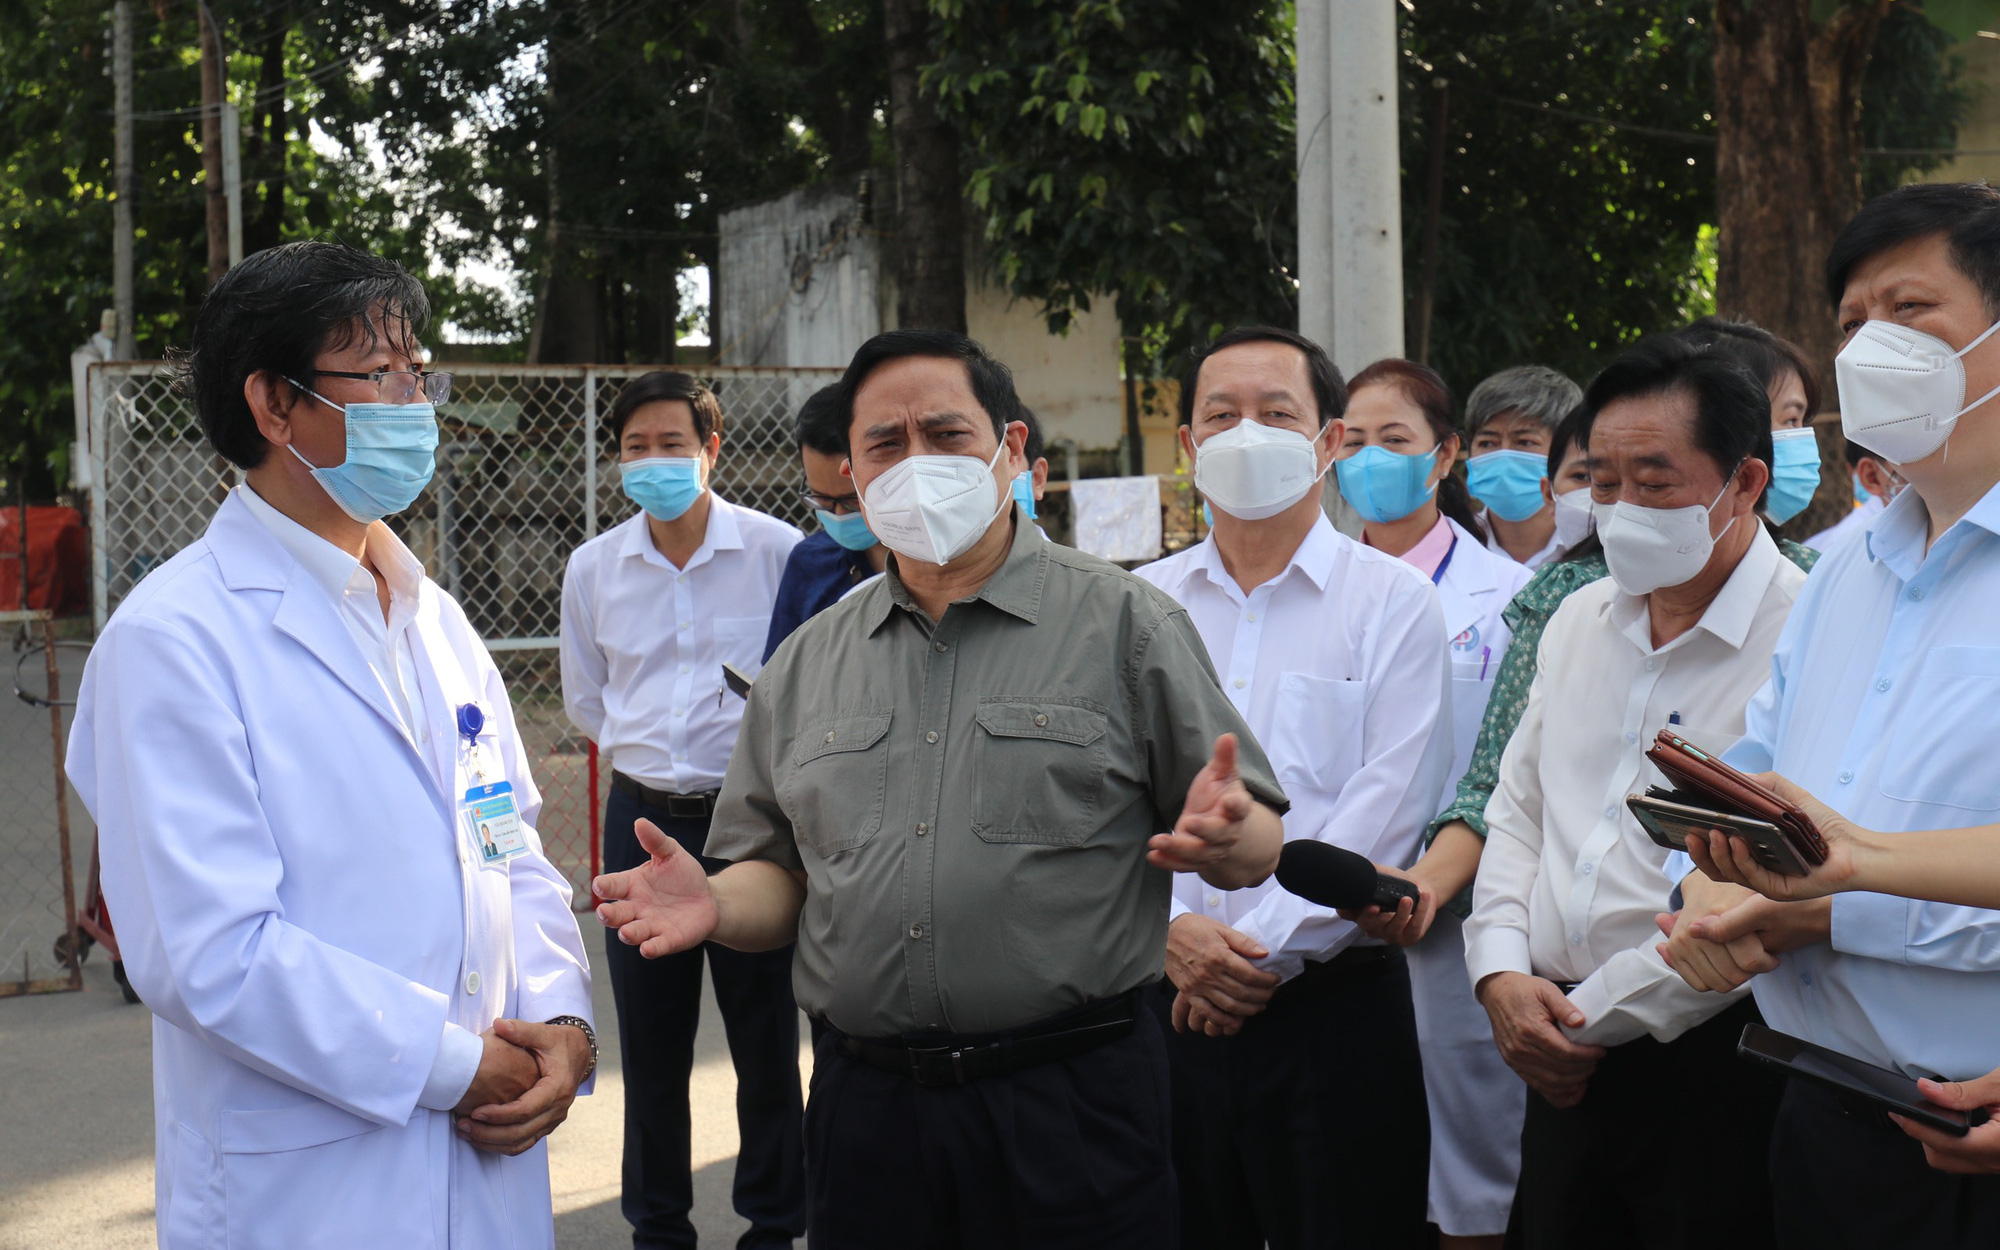 Thủ tướng Phạm Minh Chính: Bệnh viện phải tuân thủ quy trình chống dịch nghiêm ngặt hơn